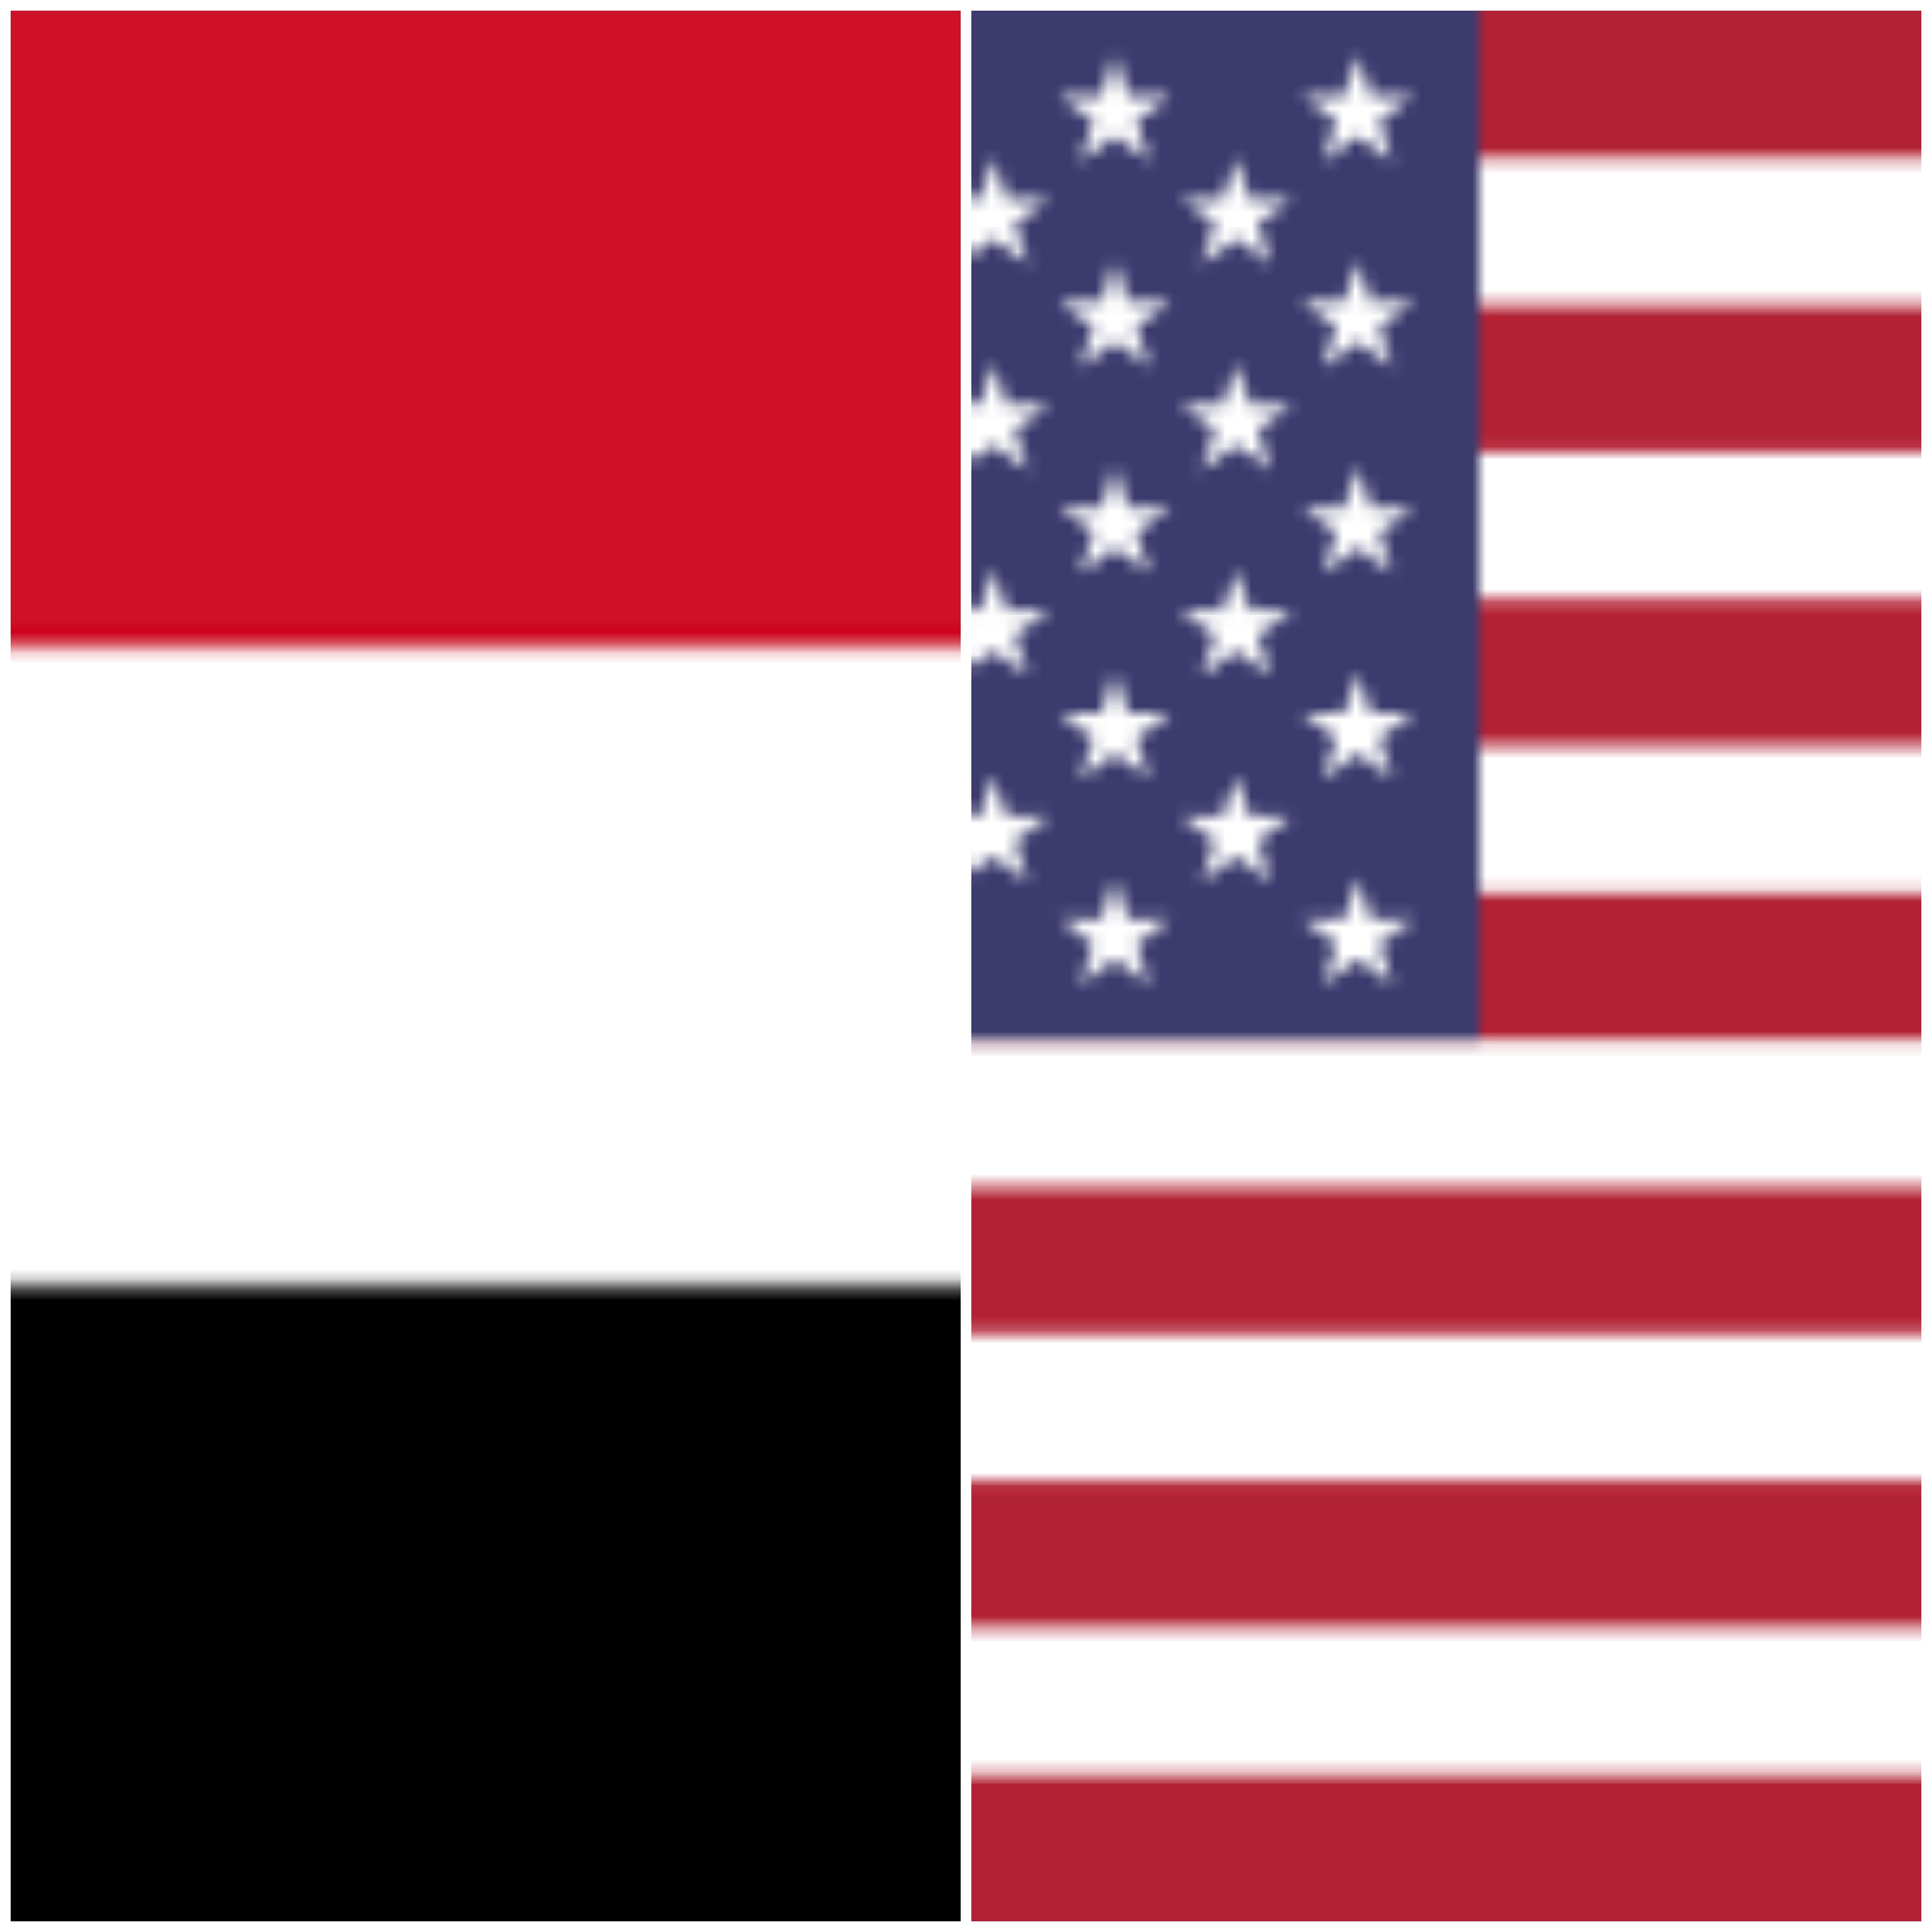 عاجل : وزارة الخارجية الأمريكية تعلن إجراء محادثات مباشرة مع الحوثيين بعد إخفاق حكومة الشرعية لإنهاء الحرب وإحلال السلام في اليمن ..